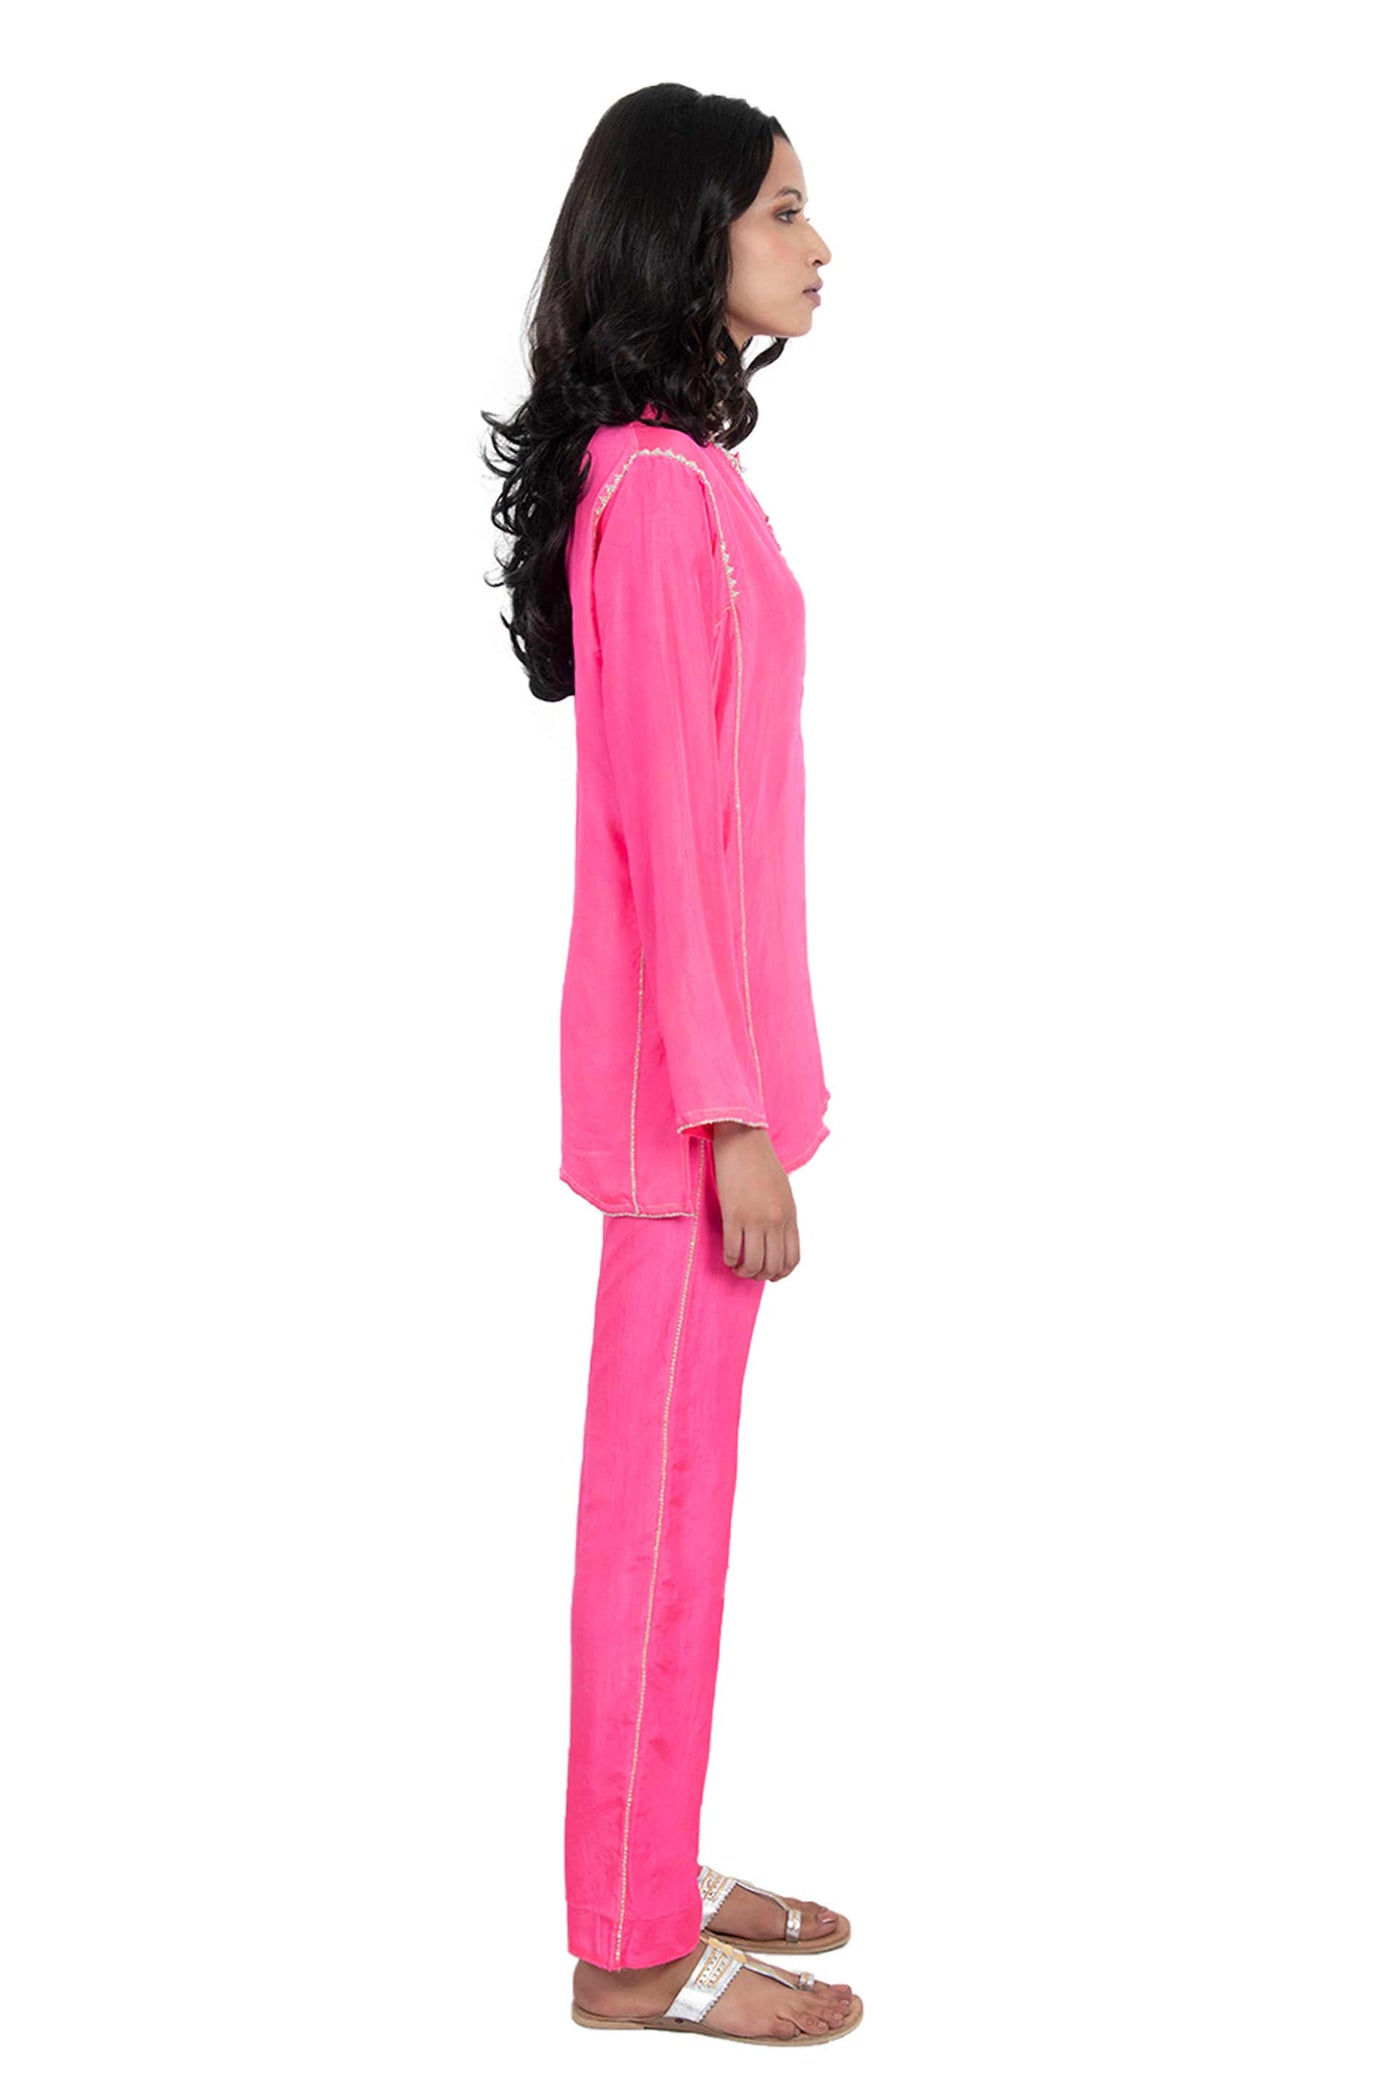 monisha jaising Raani Twin Set pink online shopping melange singapore indian designer wear